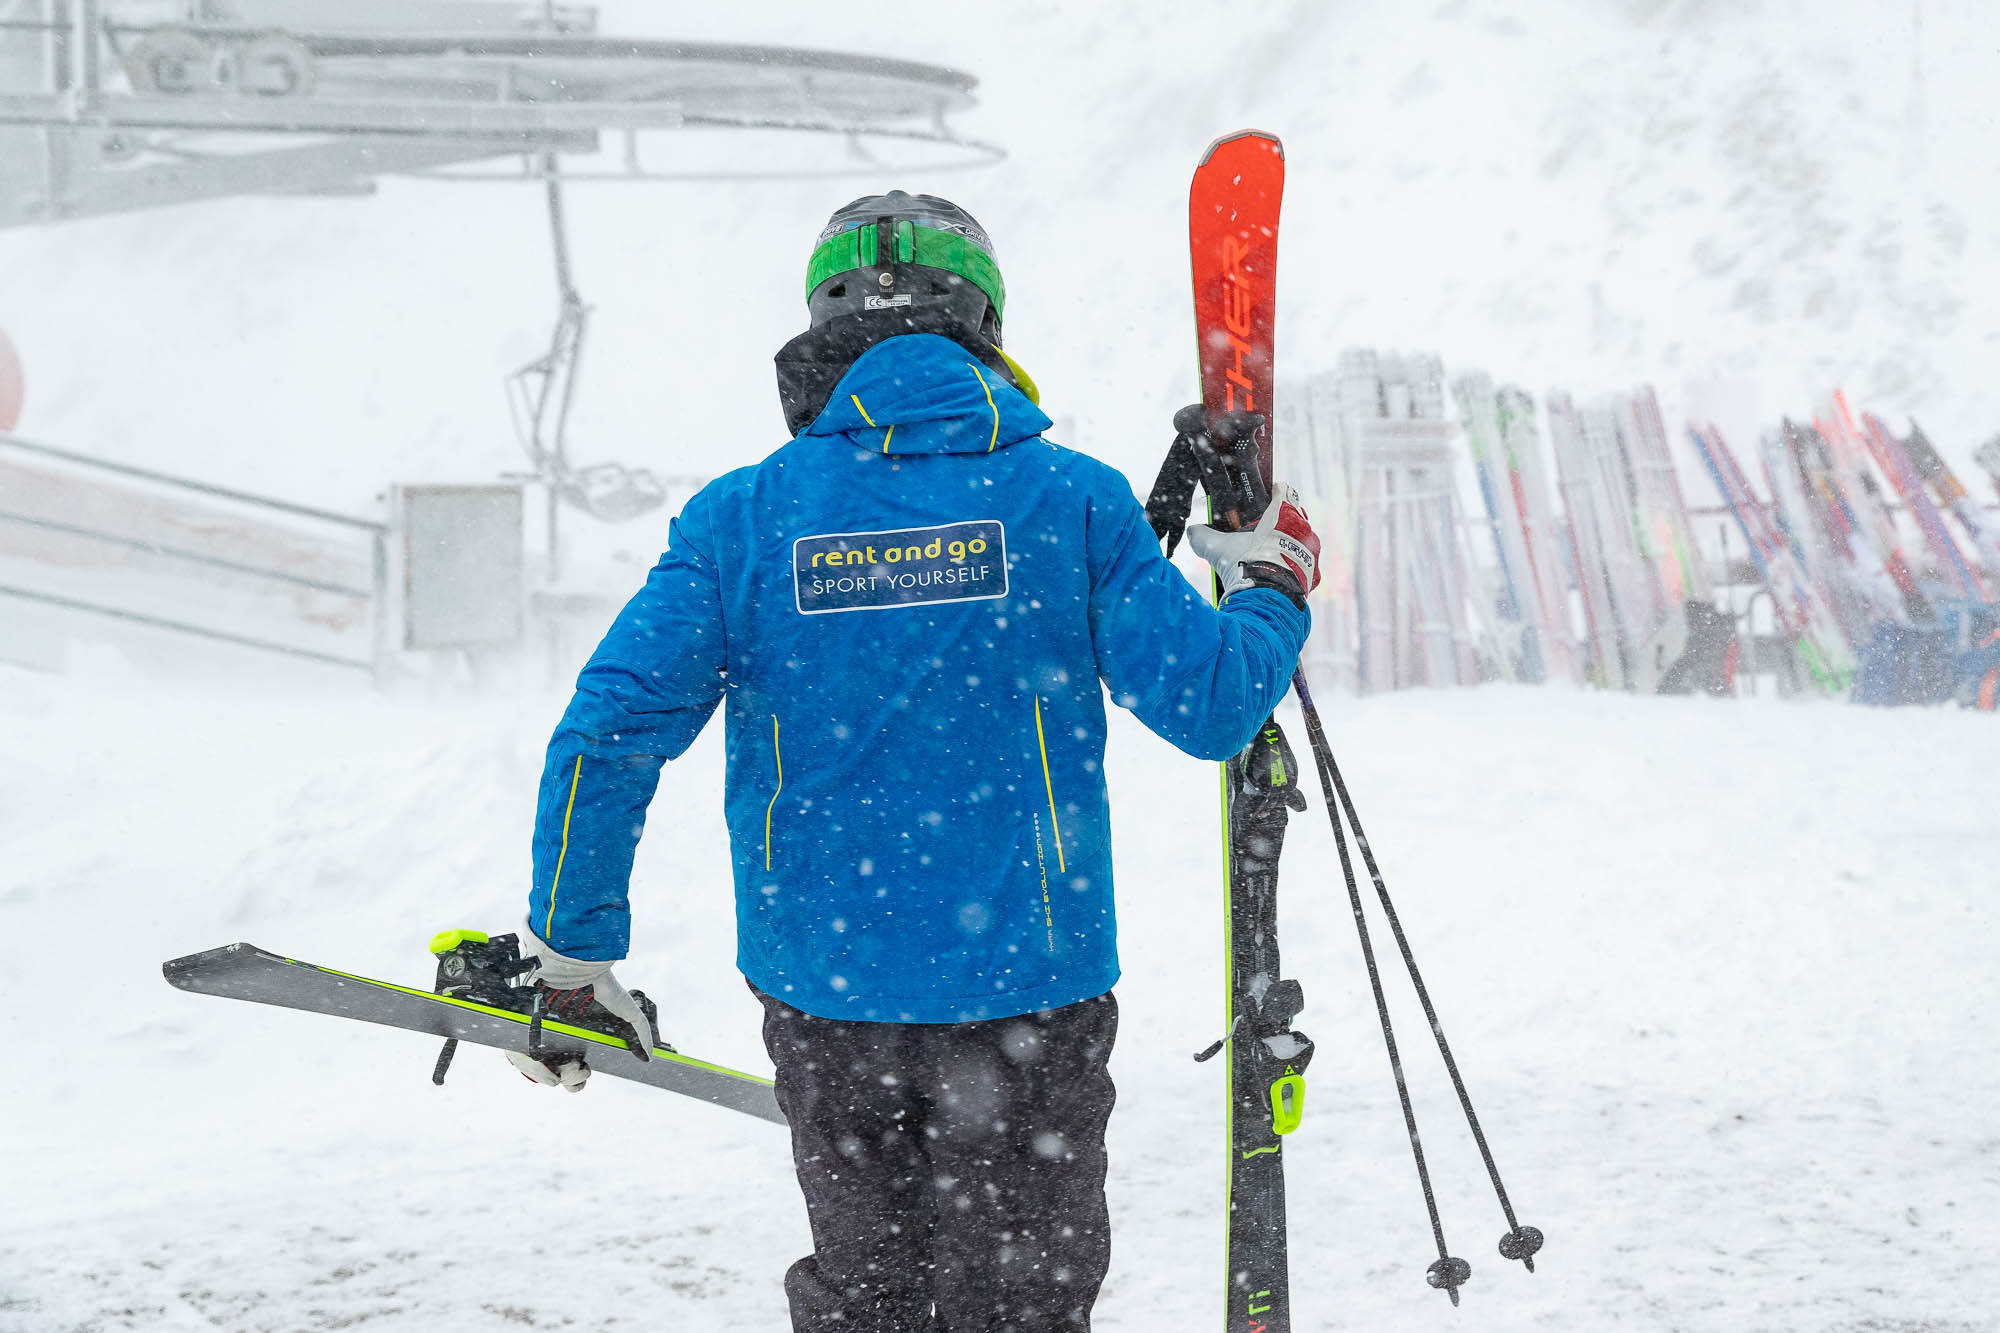 2021/2022 Season - When the ski slopes will open?